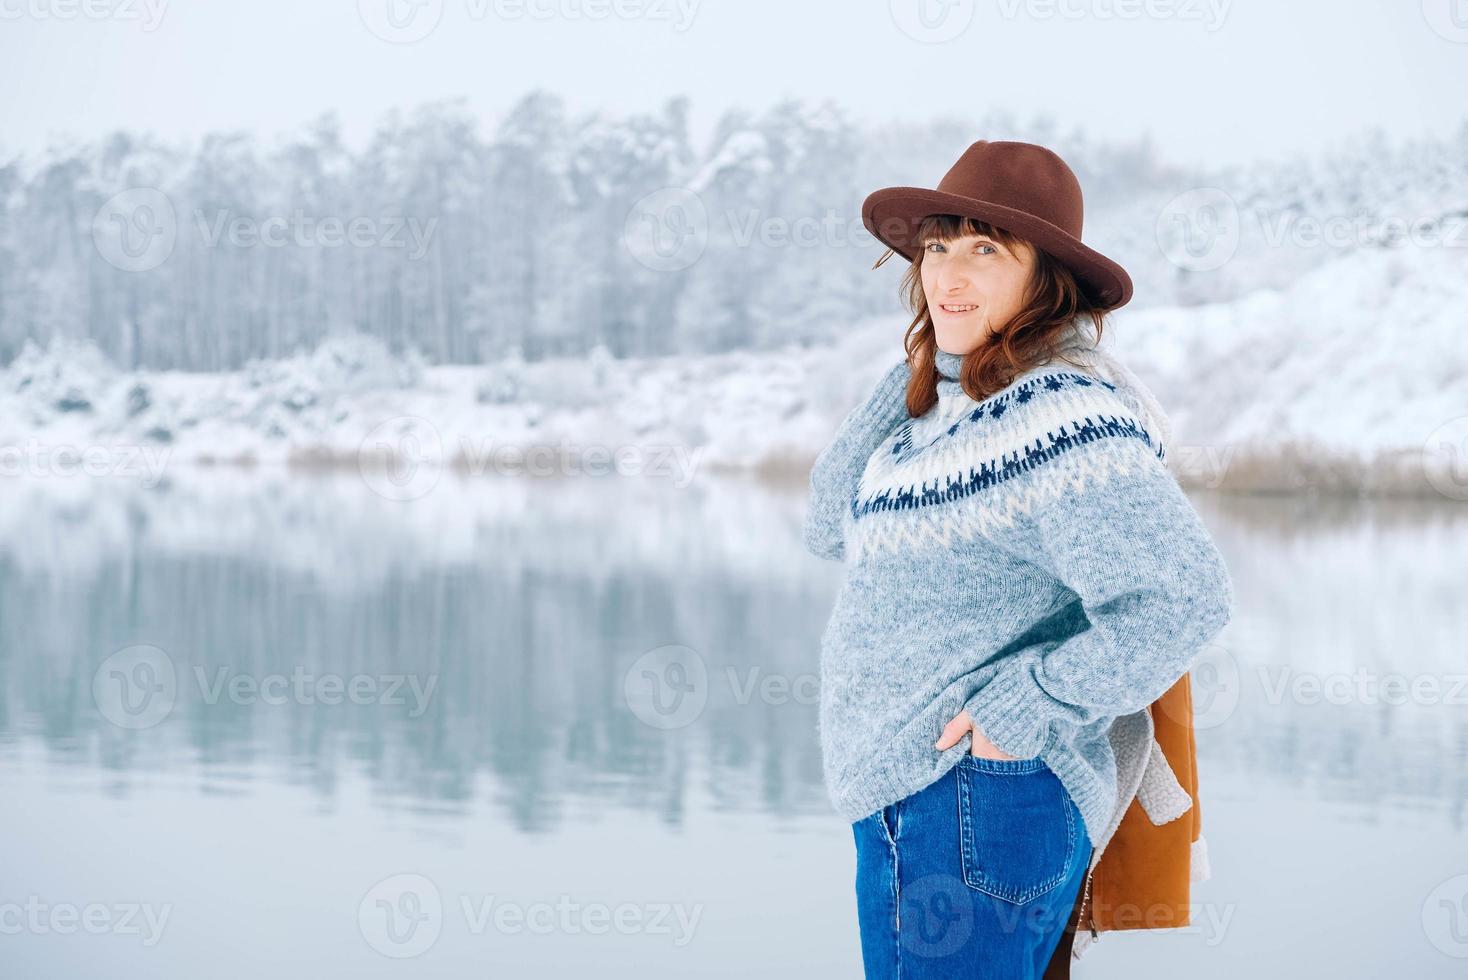 mulher vestindo chapéu e jaqueta quente em pé nas margens de um lago coberto de neve e floresta foto